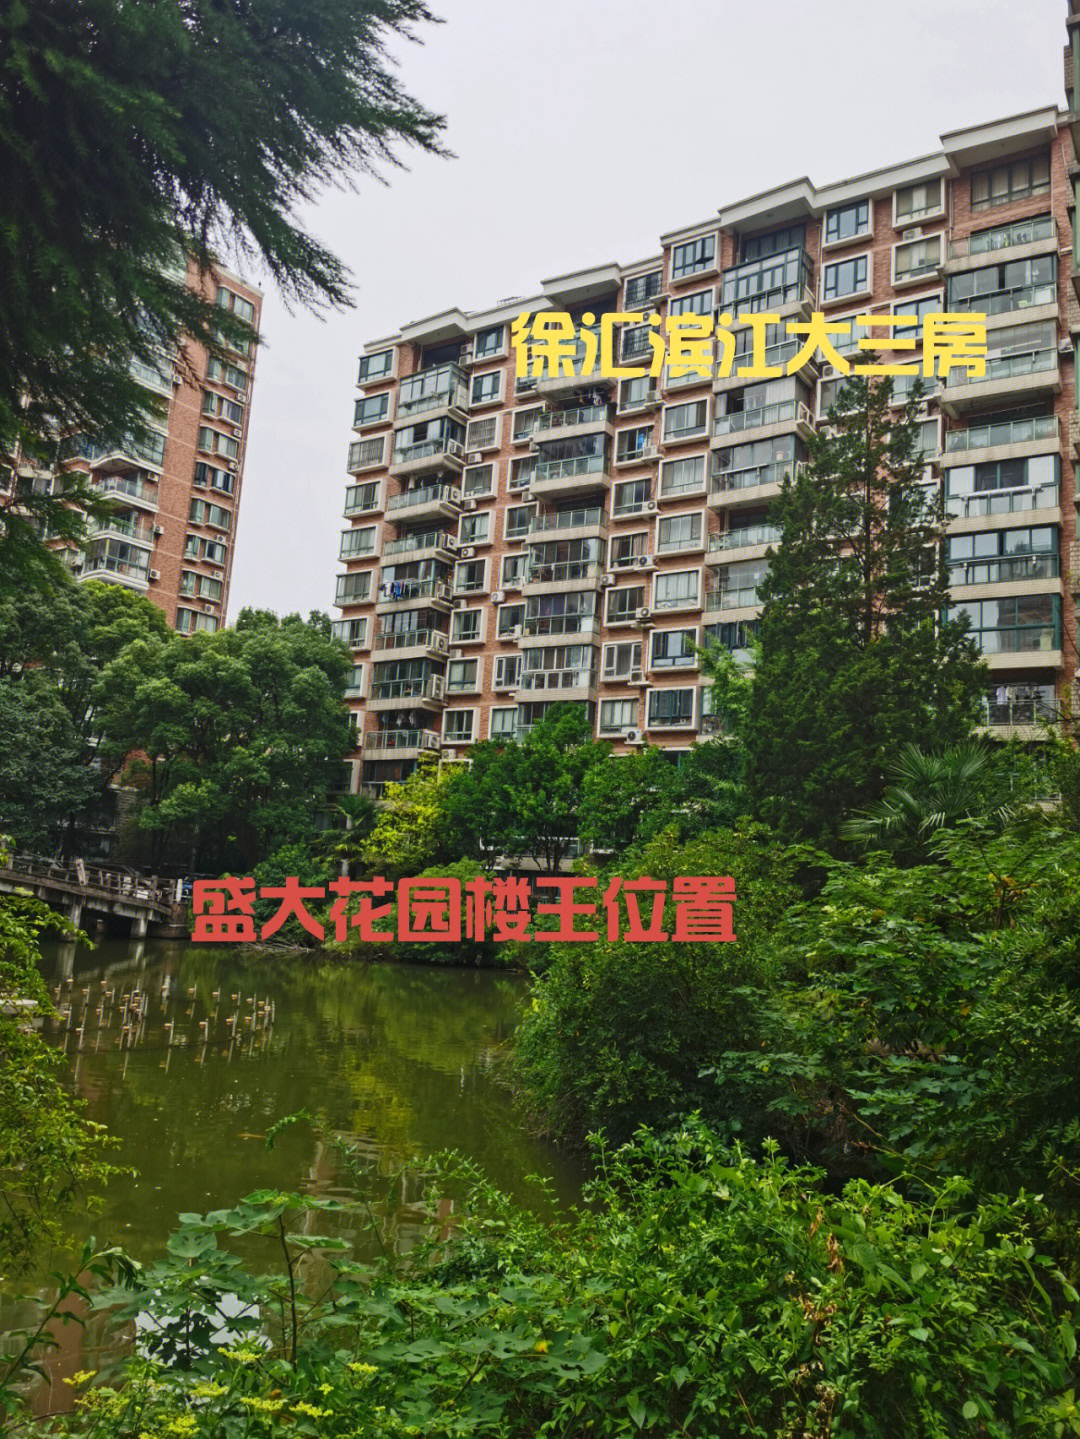 宛平南路门出口出去就是徐汇滨江的商业核心,盛大花园小学就在小区